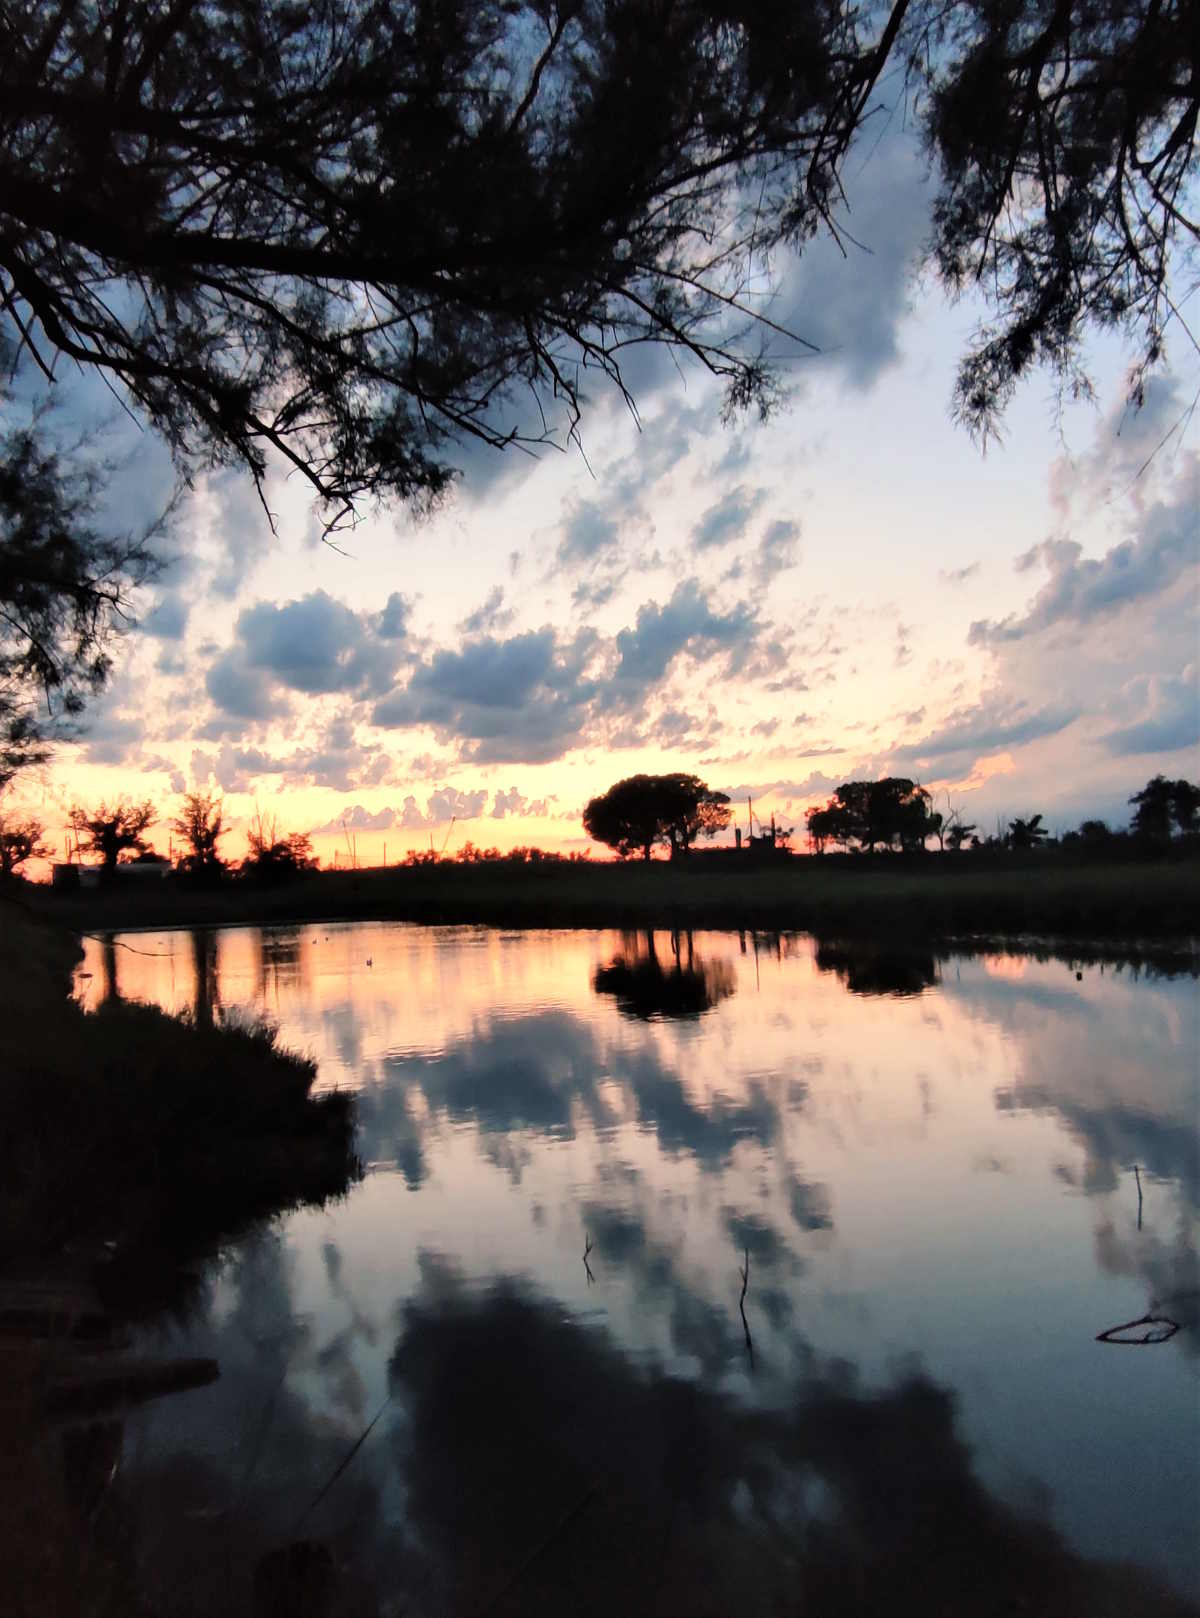 Uno scorcio dello splendido tramonto visto dal Ristorante "Bettolino di Foce" nelle Valli comacchiesi - Ferrara